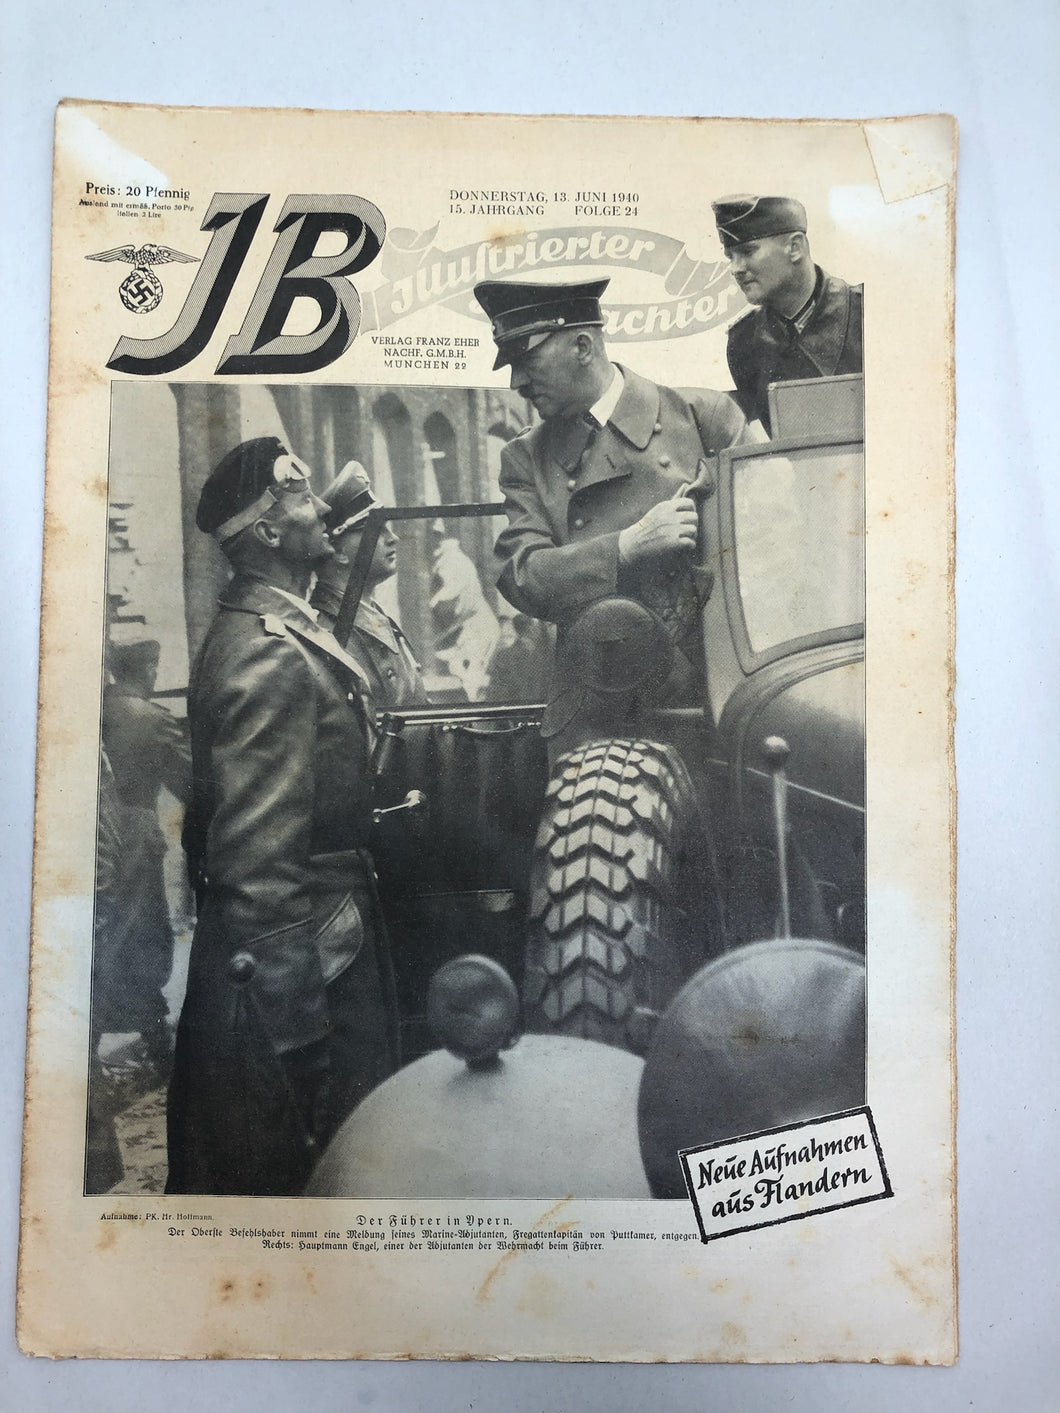 JB Juustrierter Beobachter NSDAP Magazine Original WW2 German - 13 June 1940